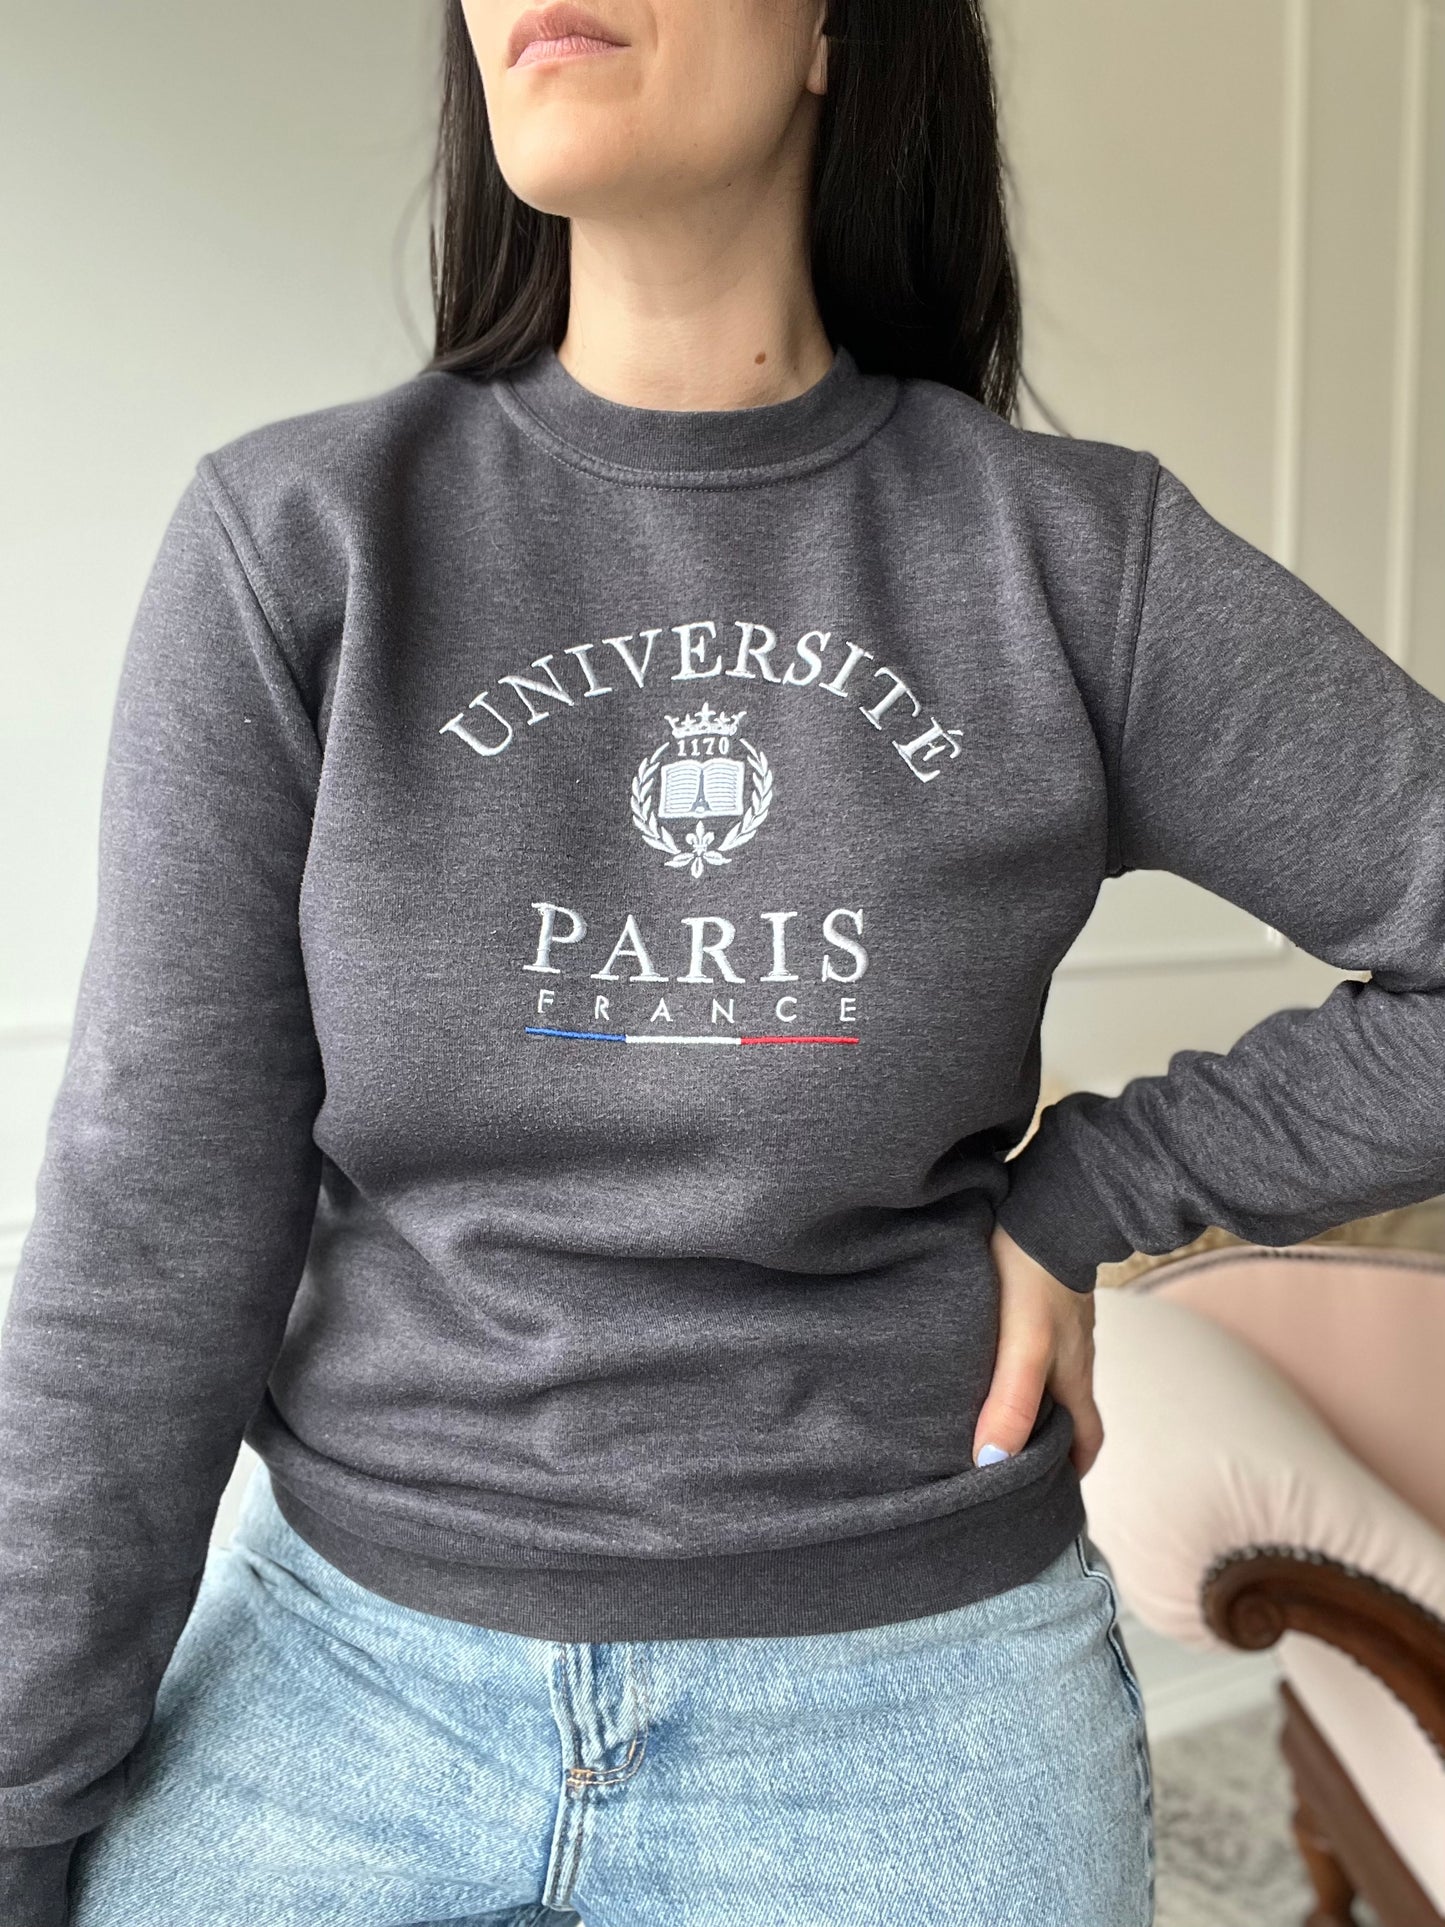 Université en France Crewneck - Size M